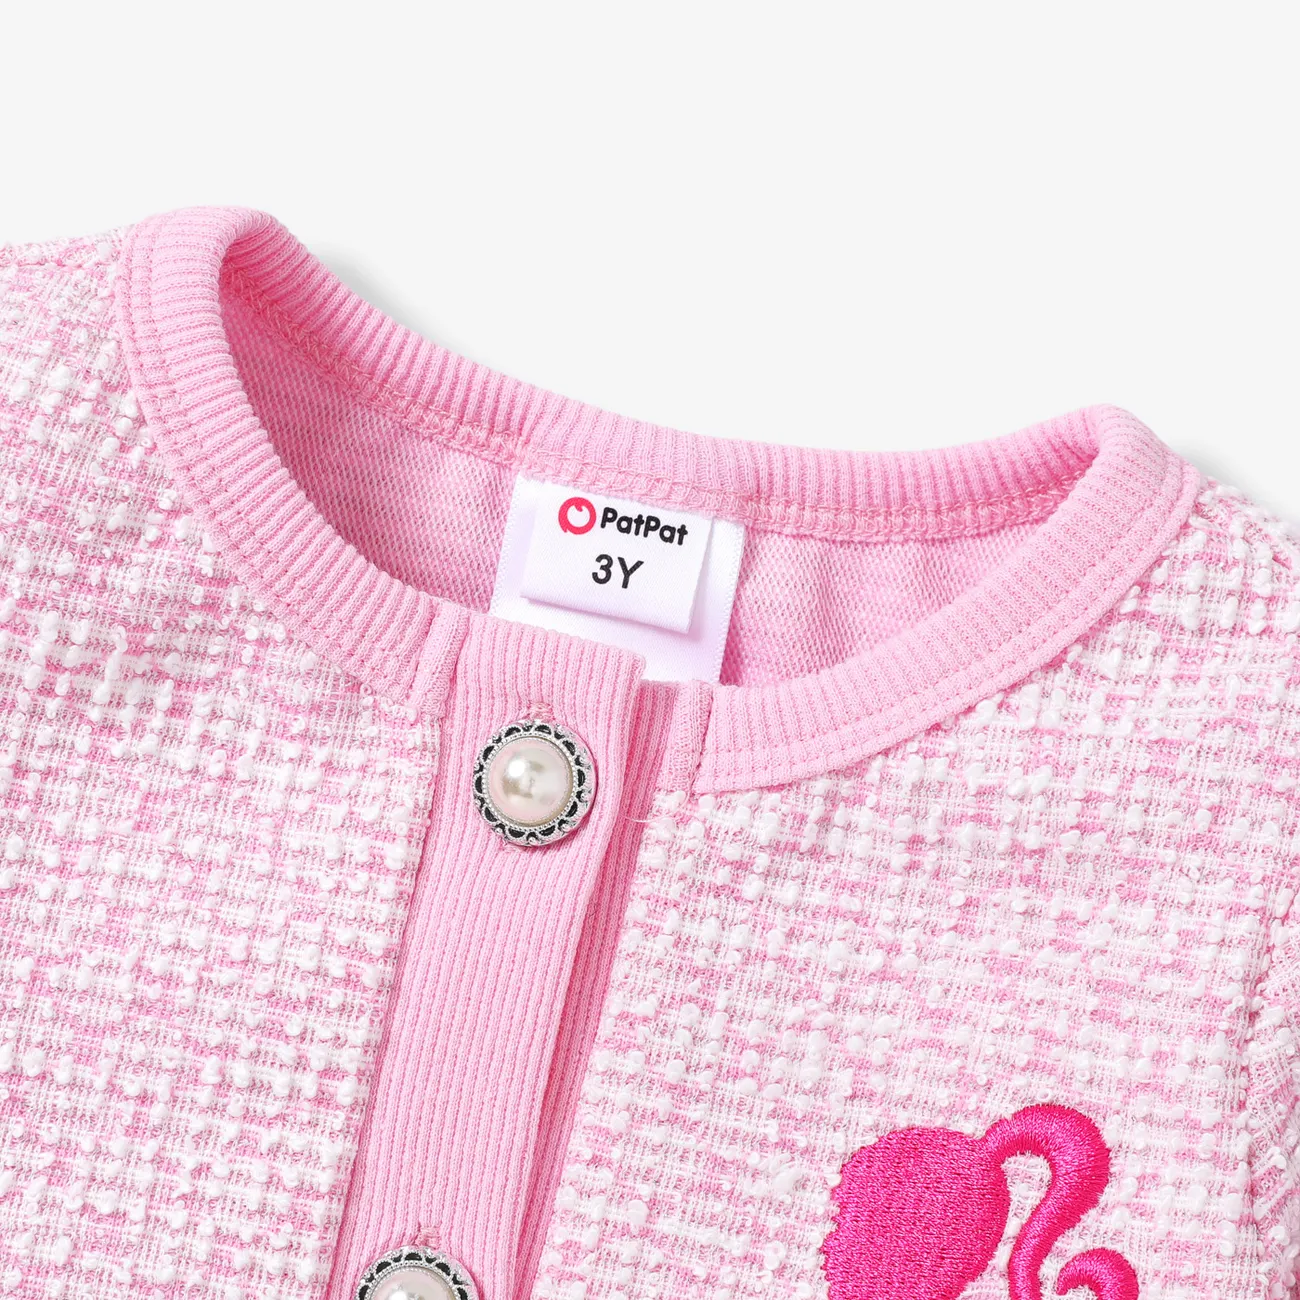 Barbie IP 女 鈕扣 甜美 套裝裙 粉色 big image 1